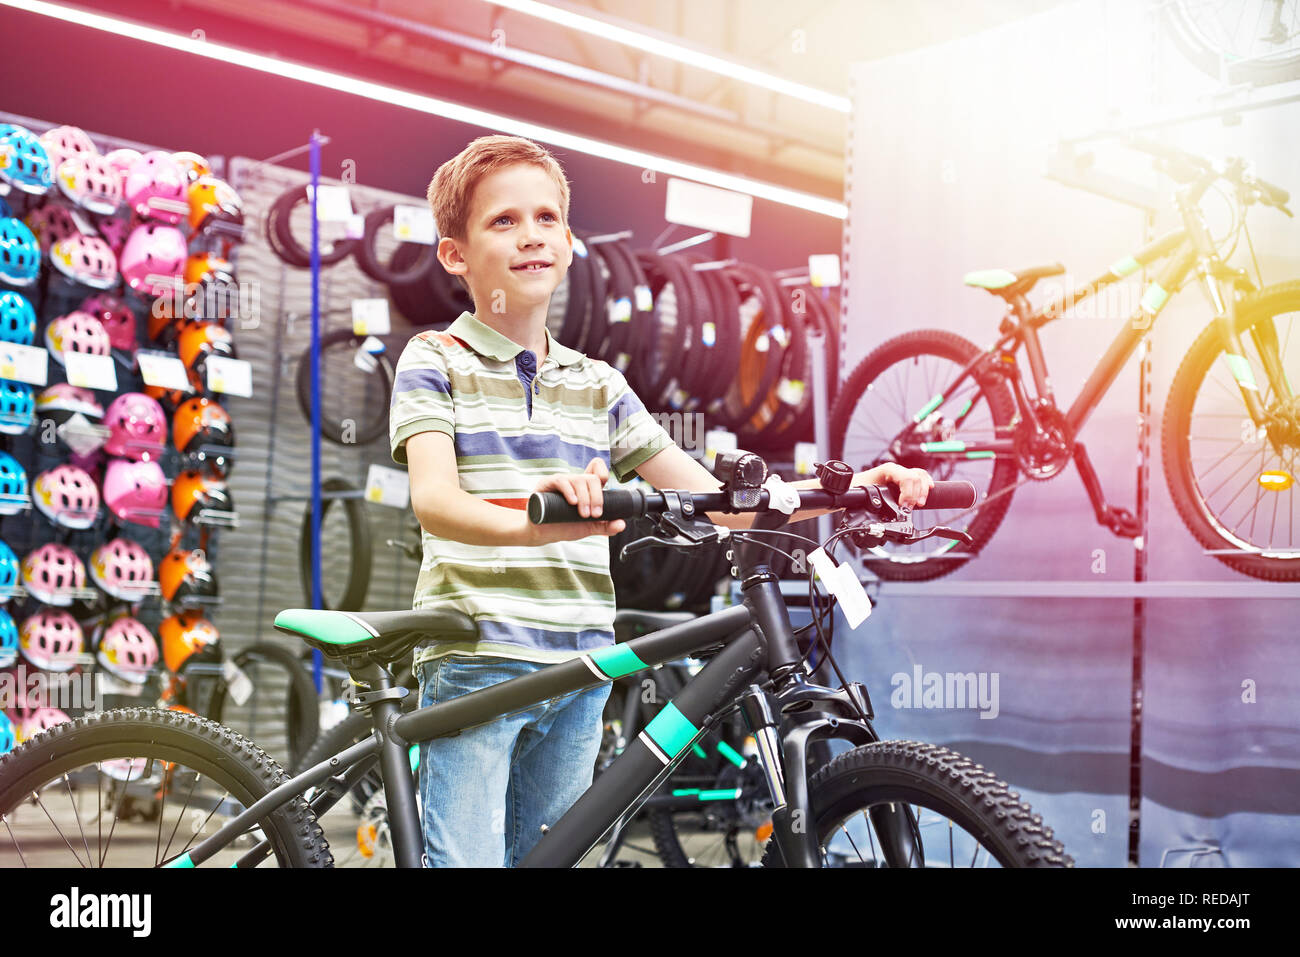 Chico y bicicleta en una tienda de deportes Foto de stock